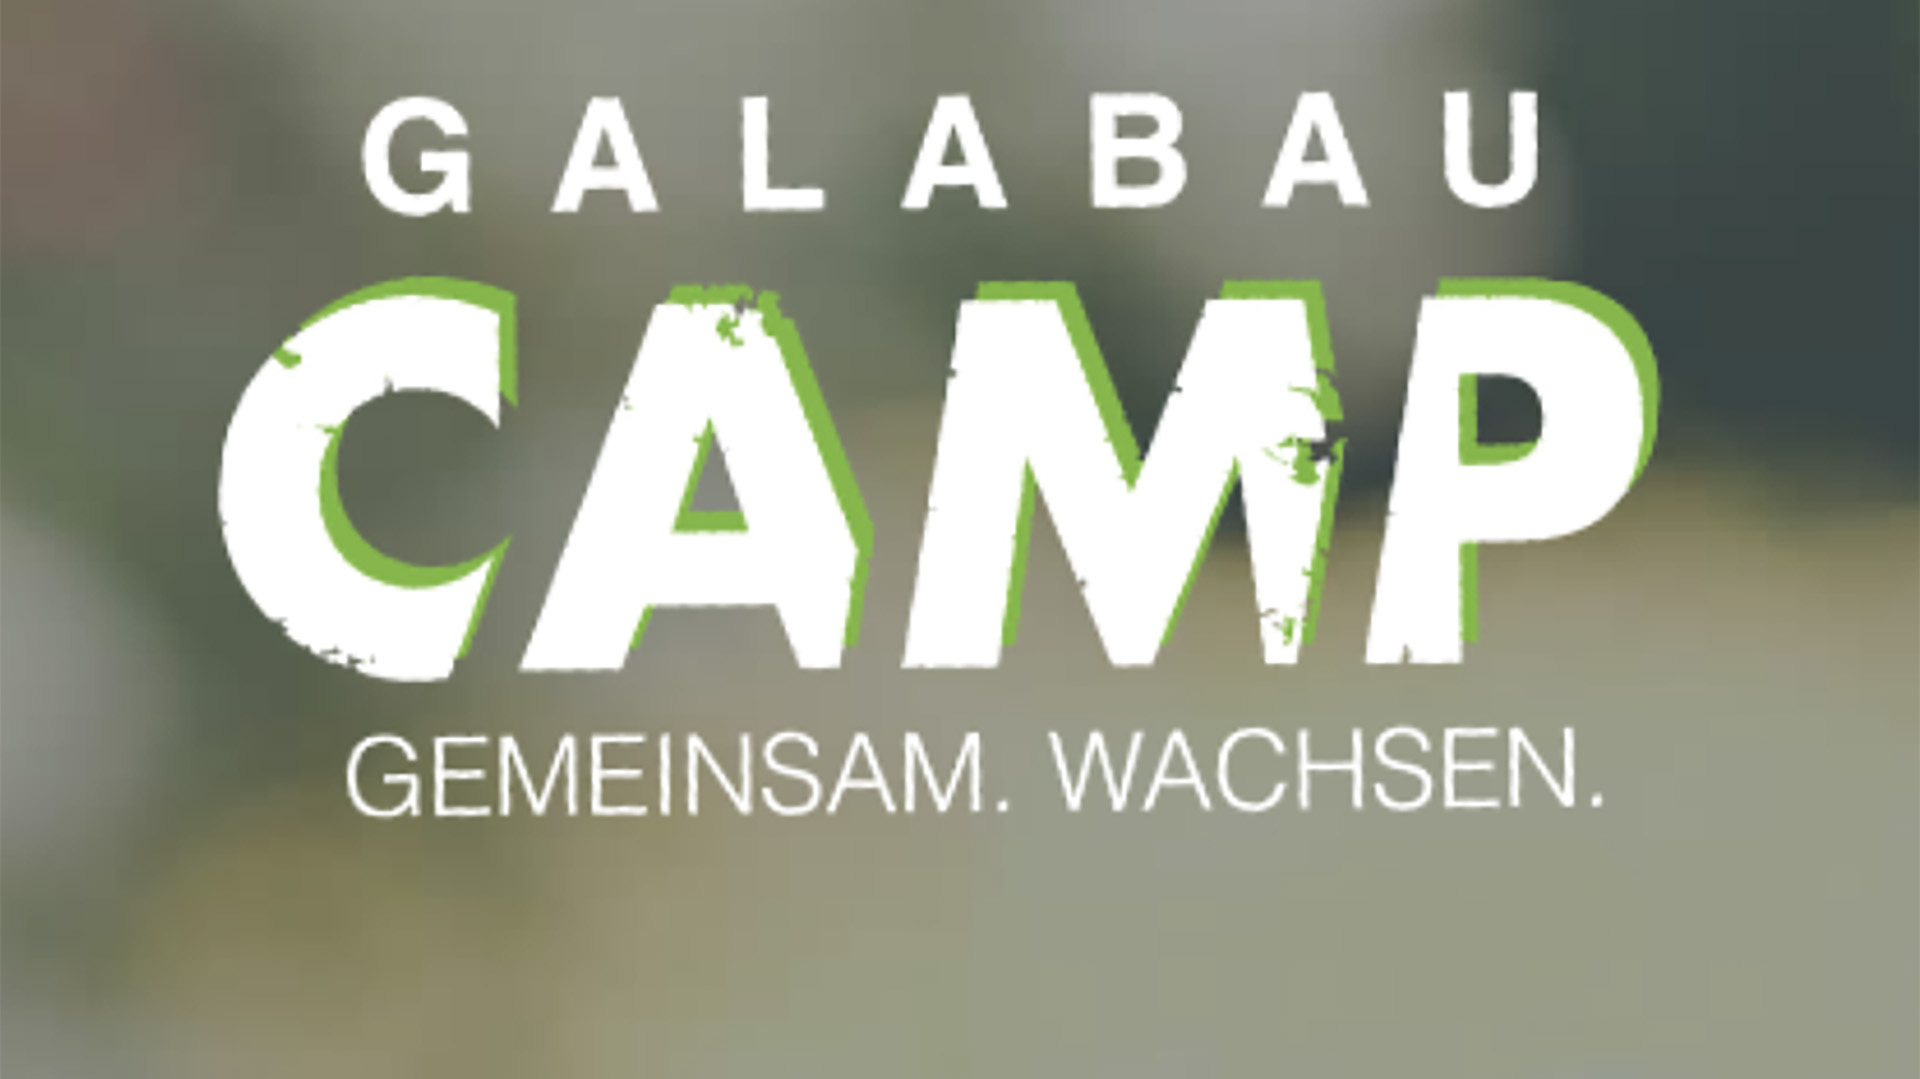 Fortbildung im Galabau mit Galabau-Camp